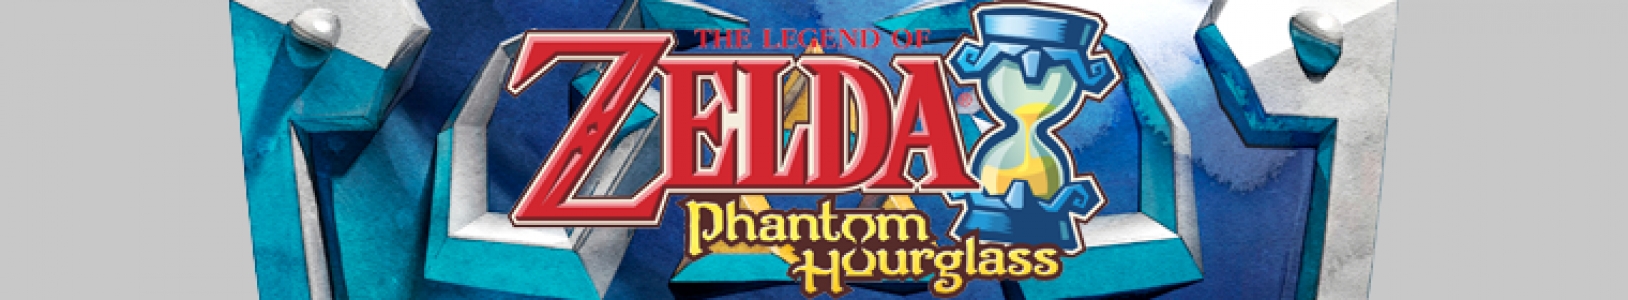 The Legend of Zelda: Phantom Hourglass banner